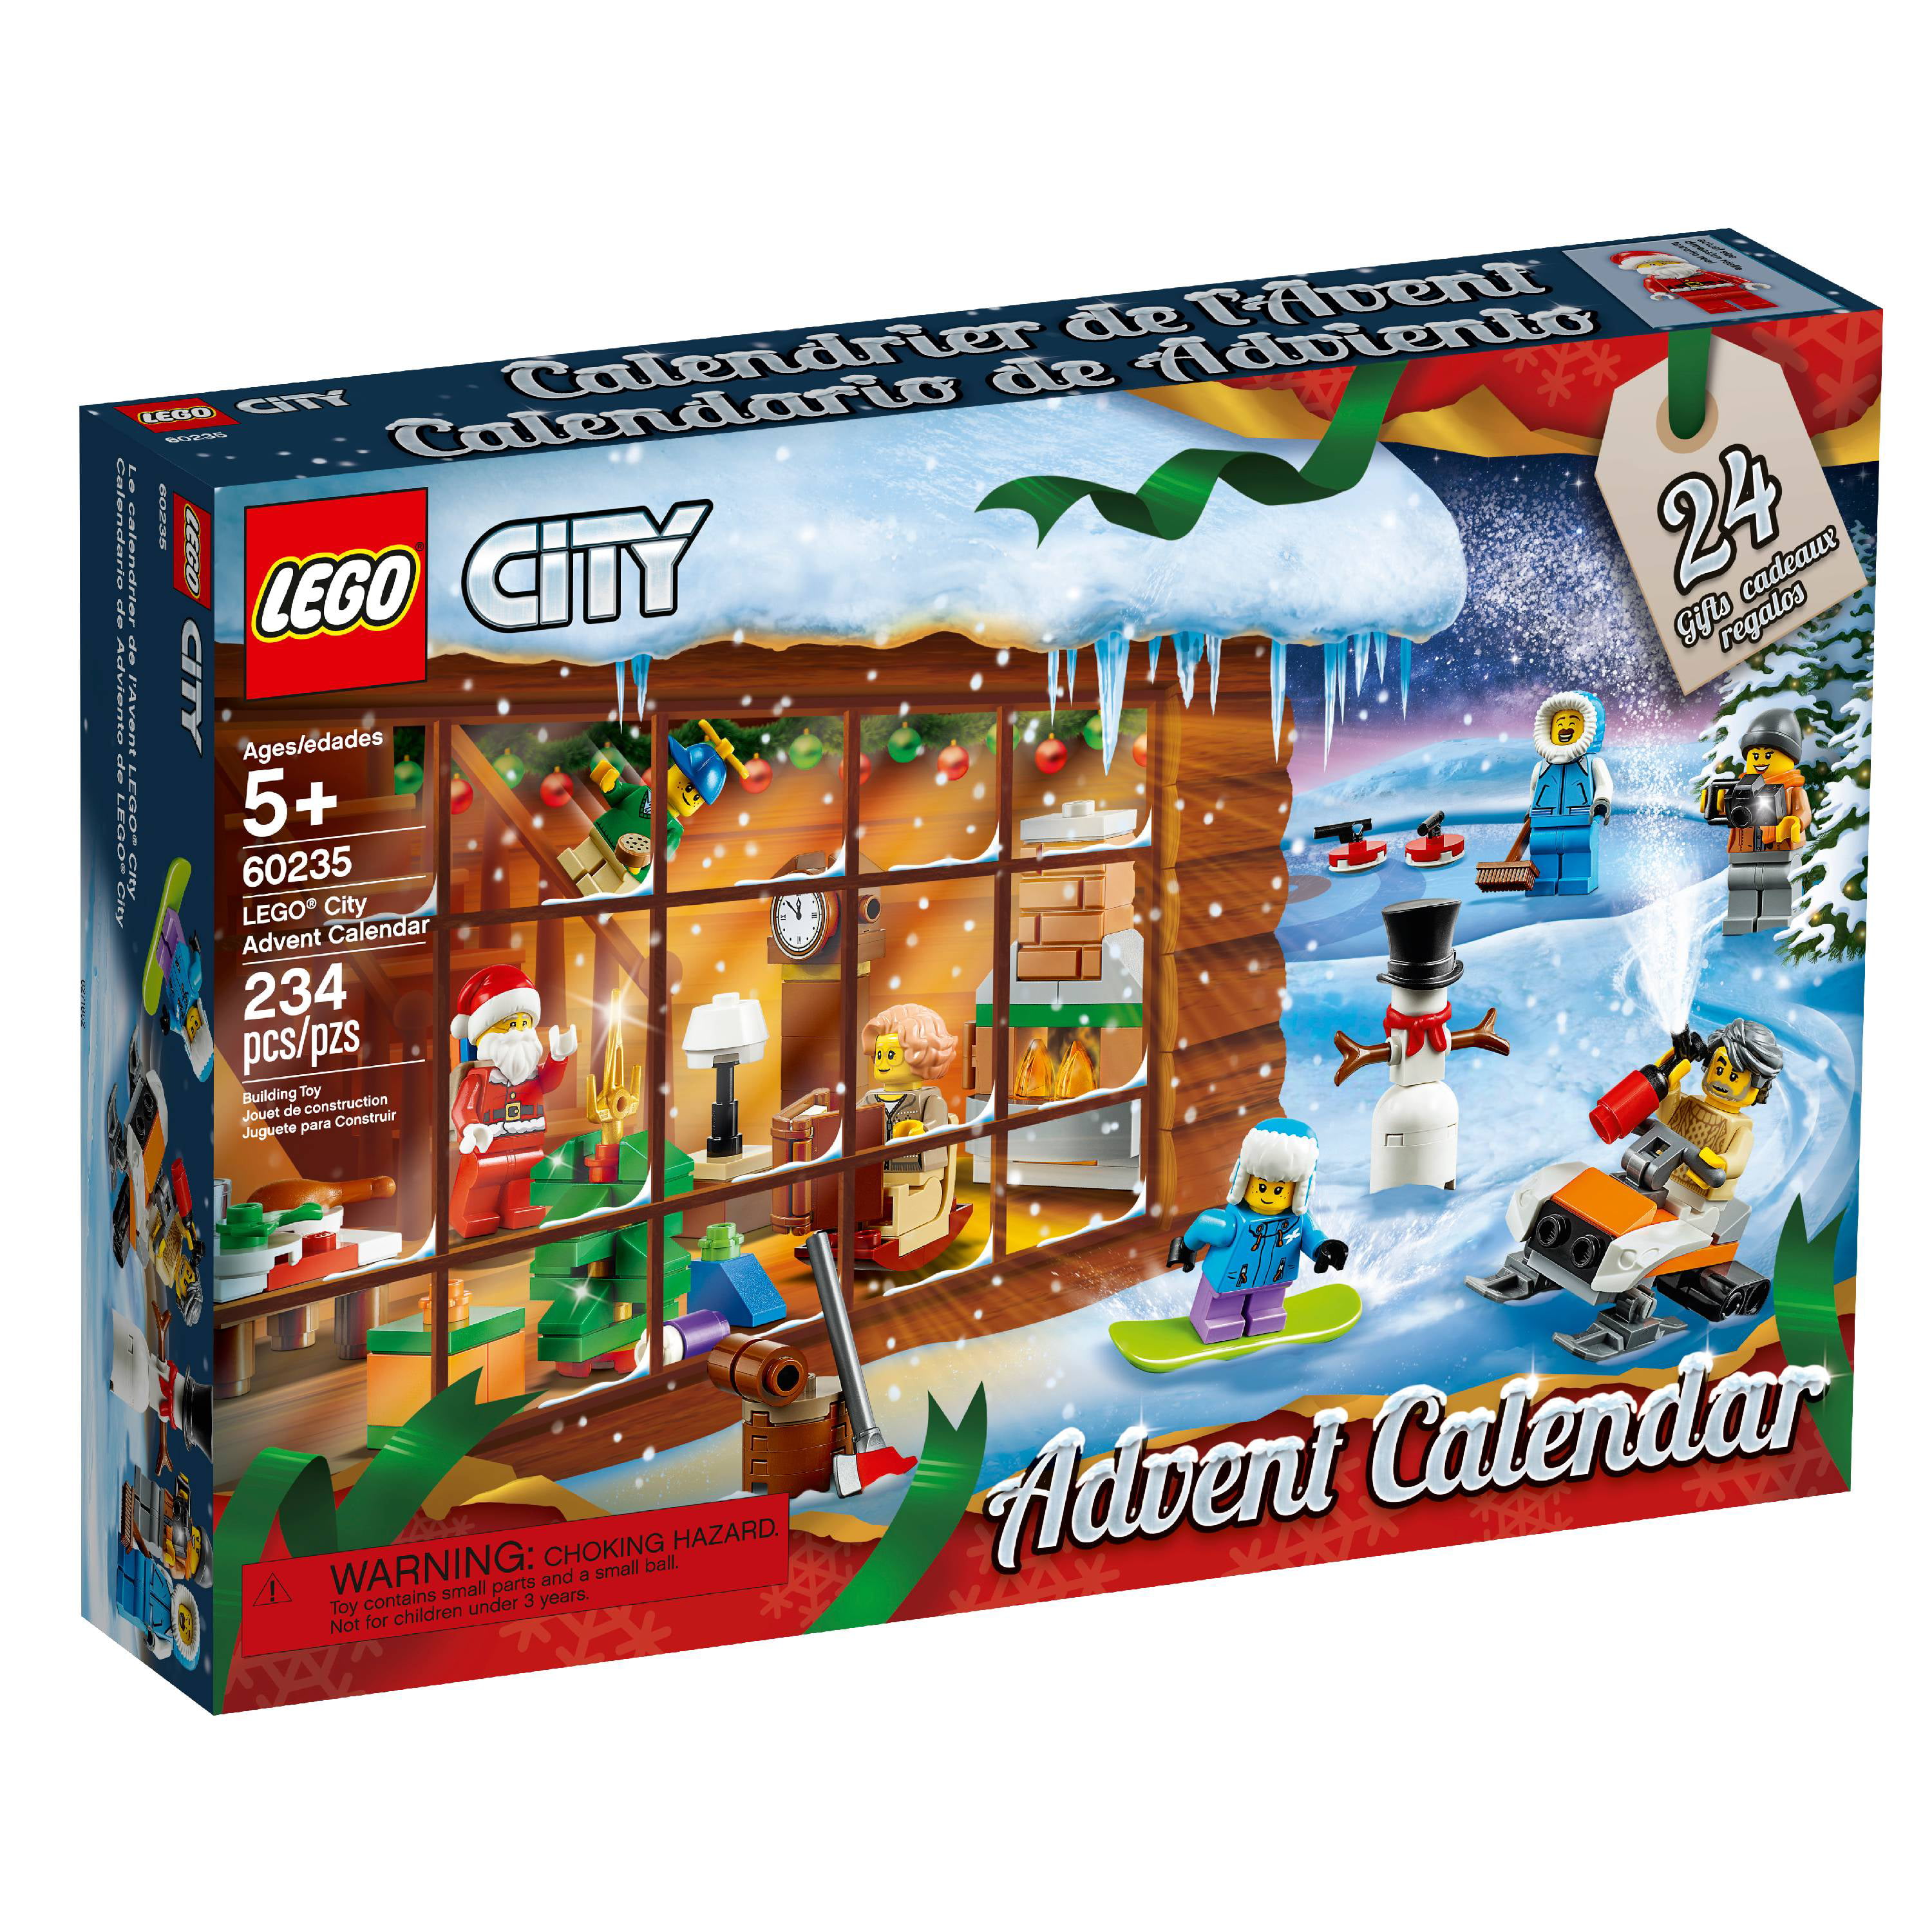 BRAND NEW FACTORY SEALED Christmas LEGO City Advent Calendar 2019 #60235 